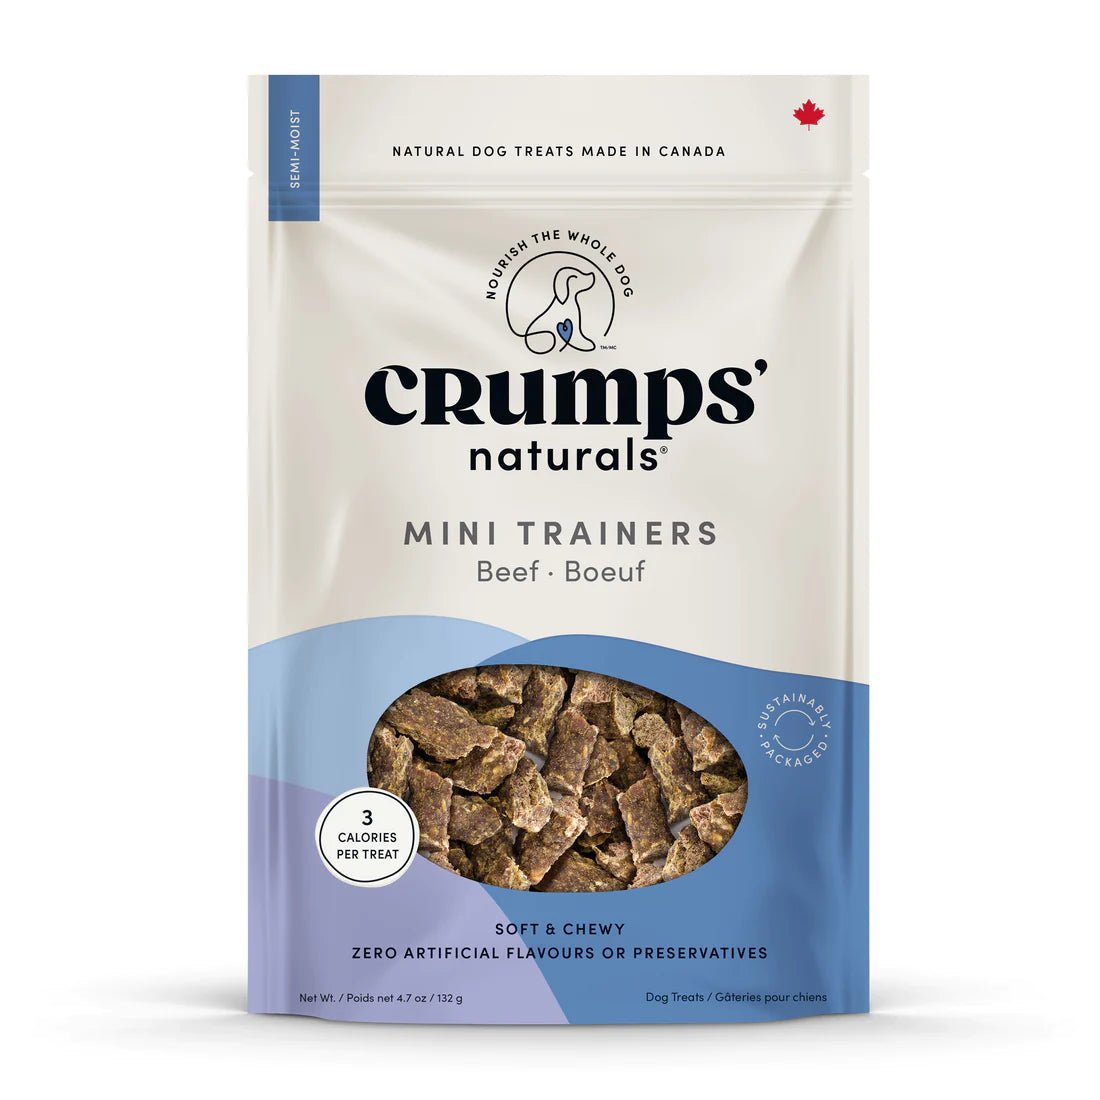 Mini Trainers Semi-moist Beef Dog Treats 4.2 oz - Crumps' Naturals - PetToba-Crumps' Naturals